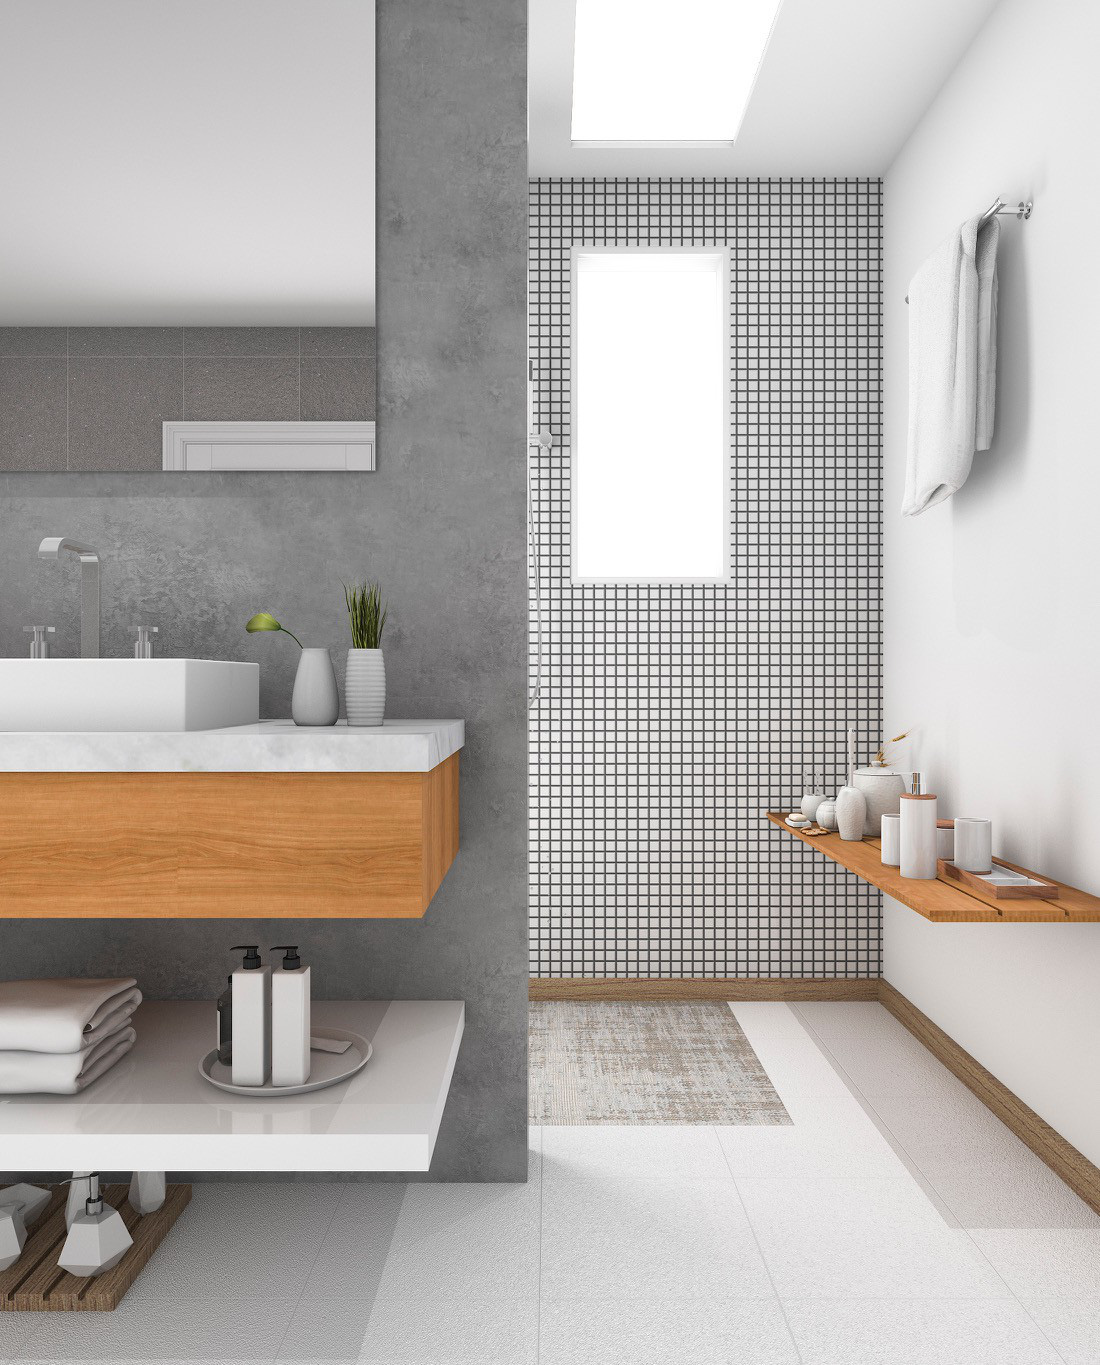  Một phòng tắm trung tính được thực hiện trong gam màu trắng và xám để thêm ấm áp cho không gian.